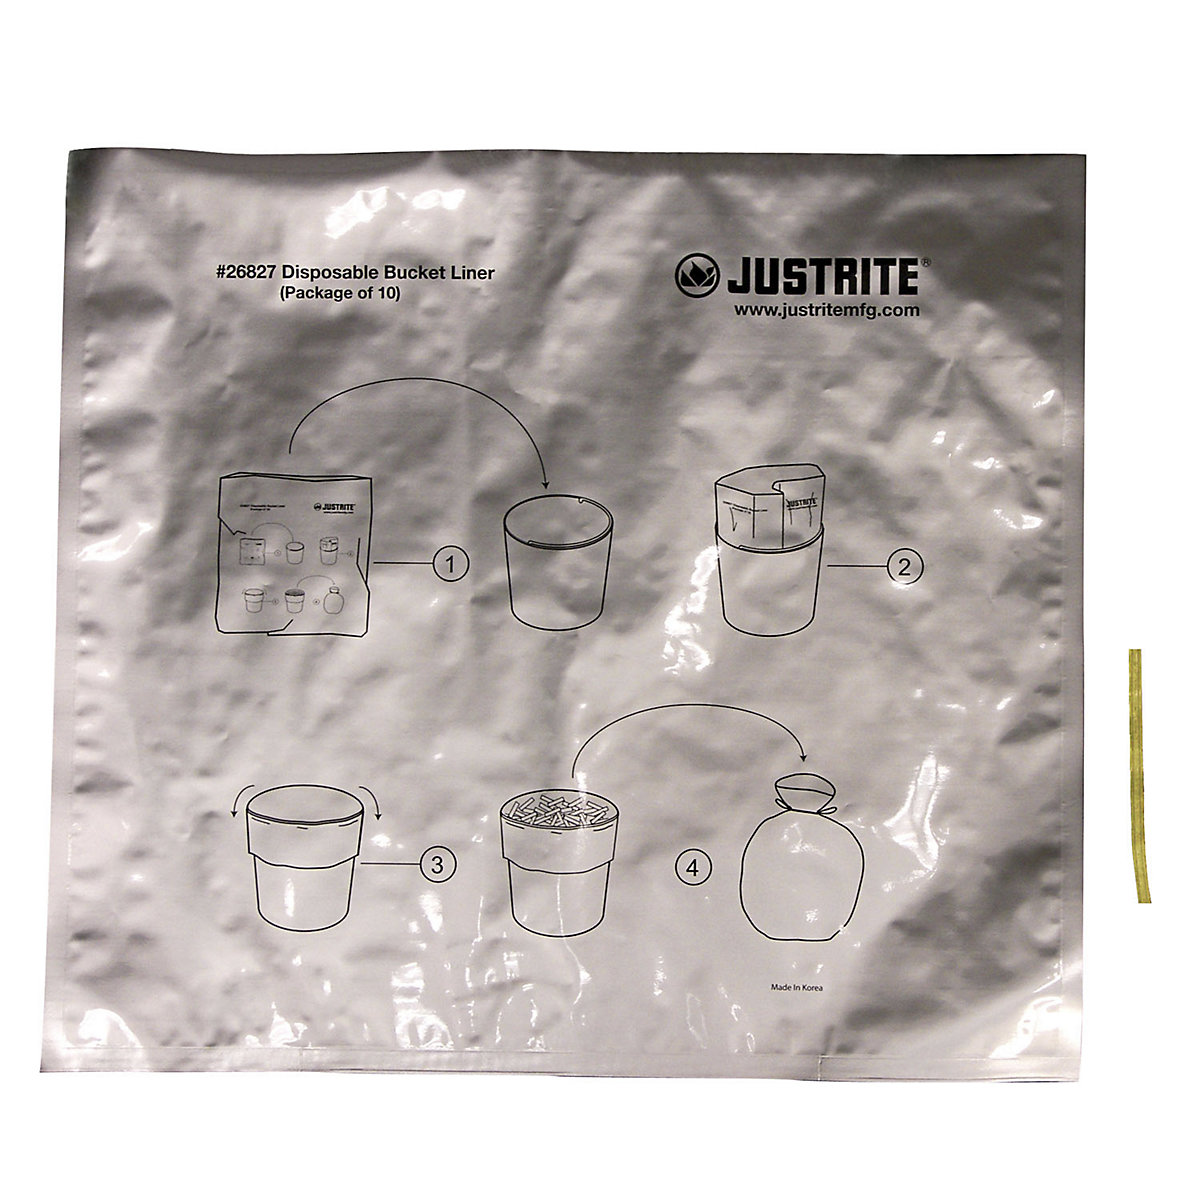 Speciális alumínium hulladékgyűjtő zsákok álló hamutartókhoz – Justrite